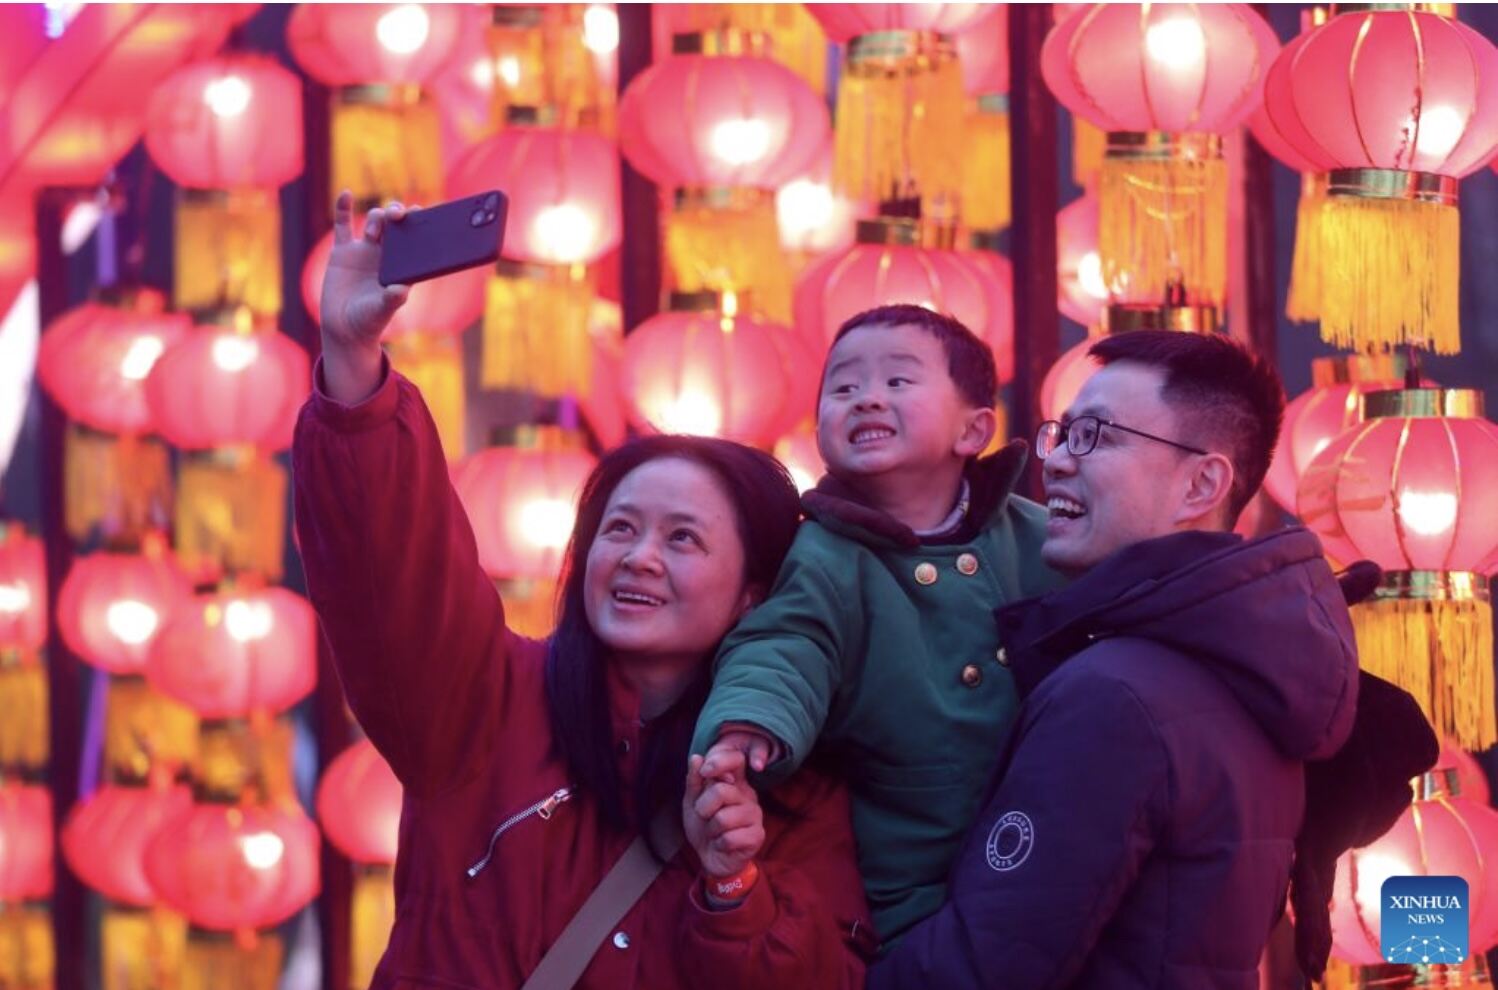 Du khách chụp ảnh trong lễ hội đèn lồng ở Quý Dương, tỉnh Quý Châu, phía tây nam Trung Quốc. Ảnh: Xinhua